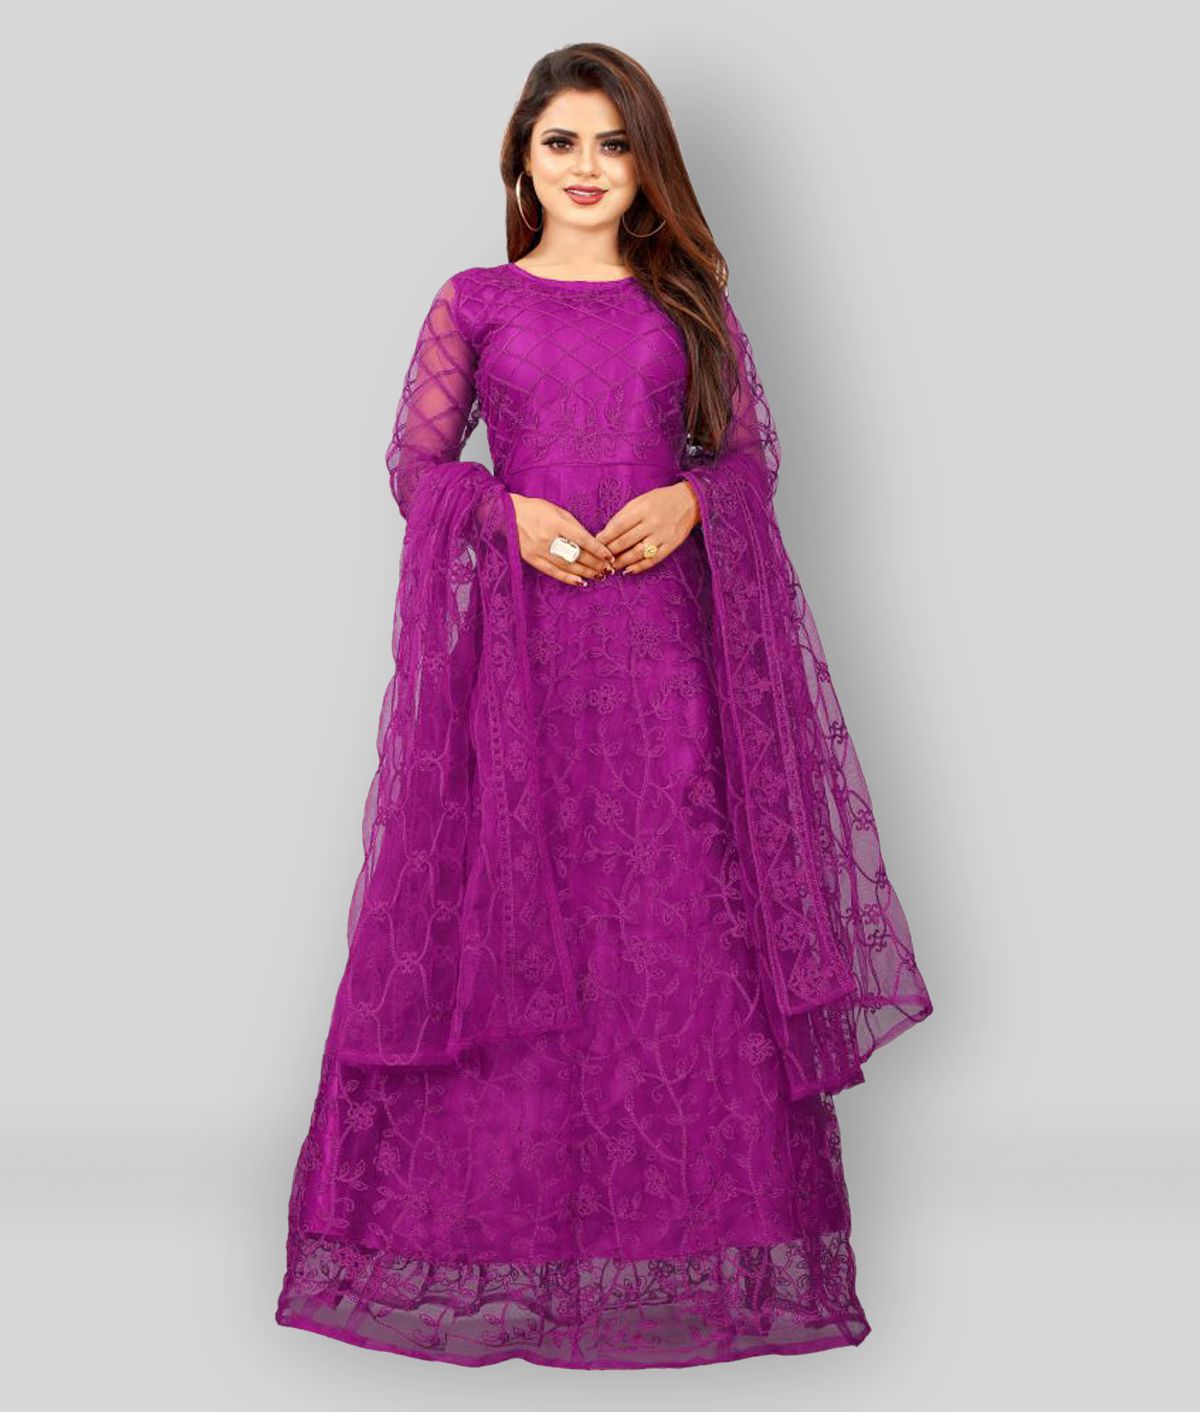     			Aika Purple Net Ethnic Gown - Single